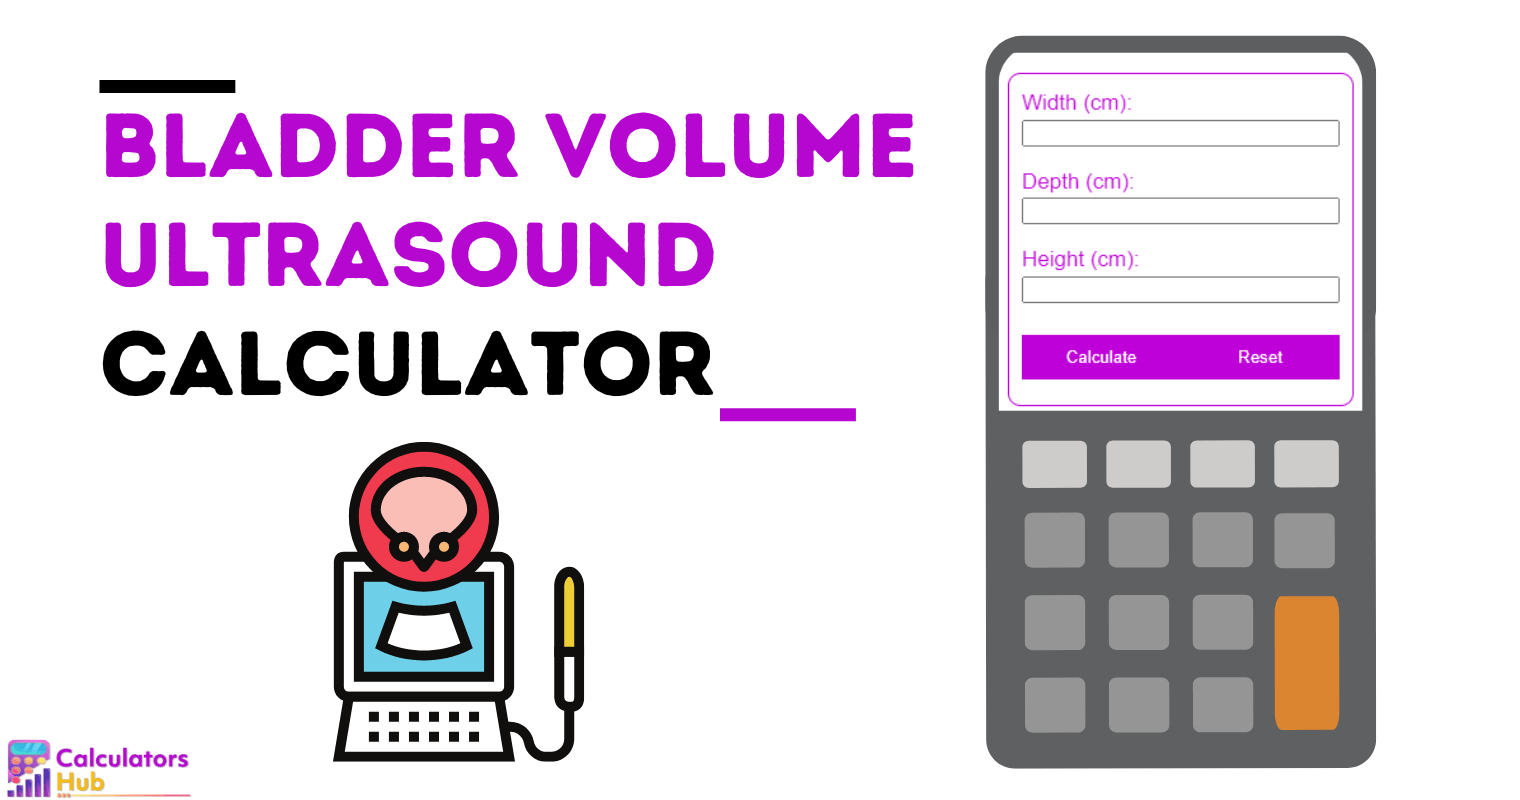 Bladder Volume Calculator Ultrasound